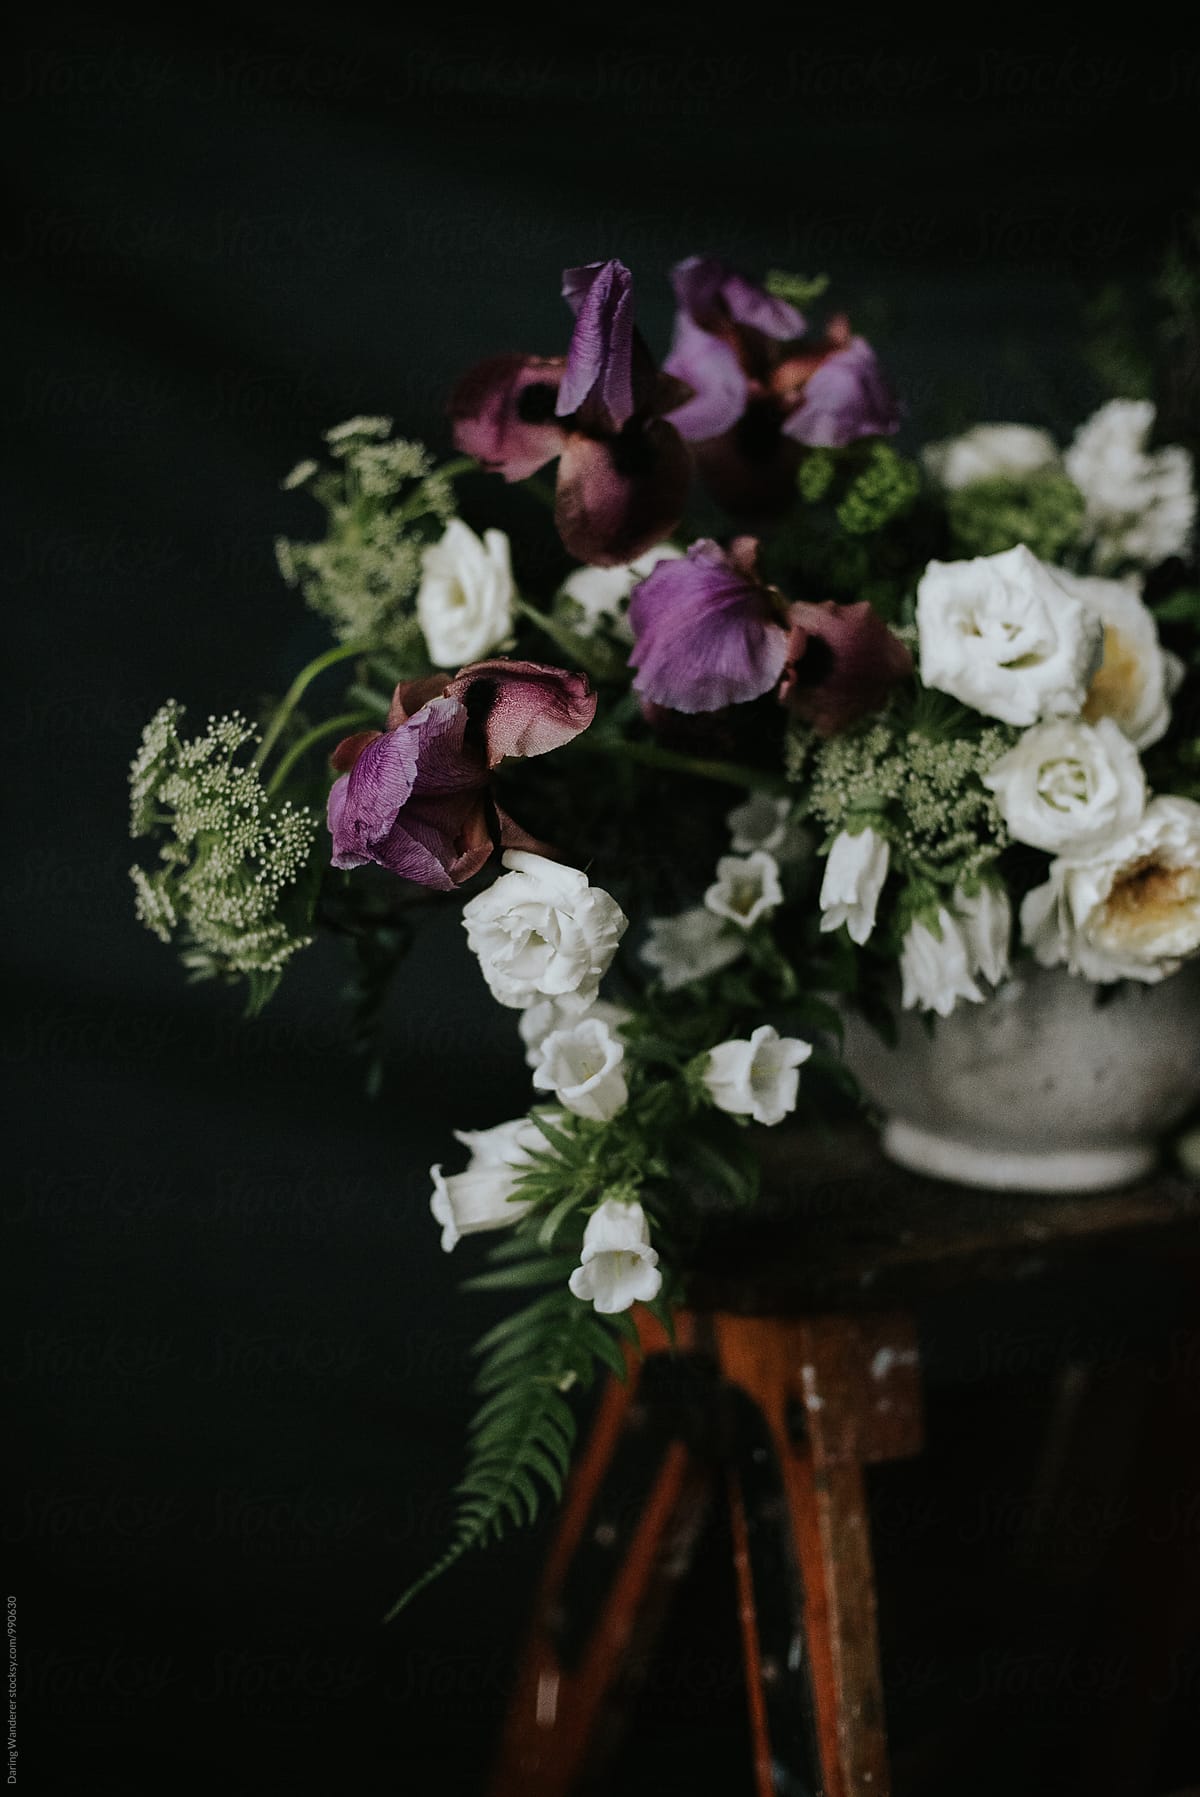 Dark and moody purple and white wedding flower arrangement with dark background